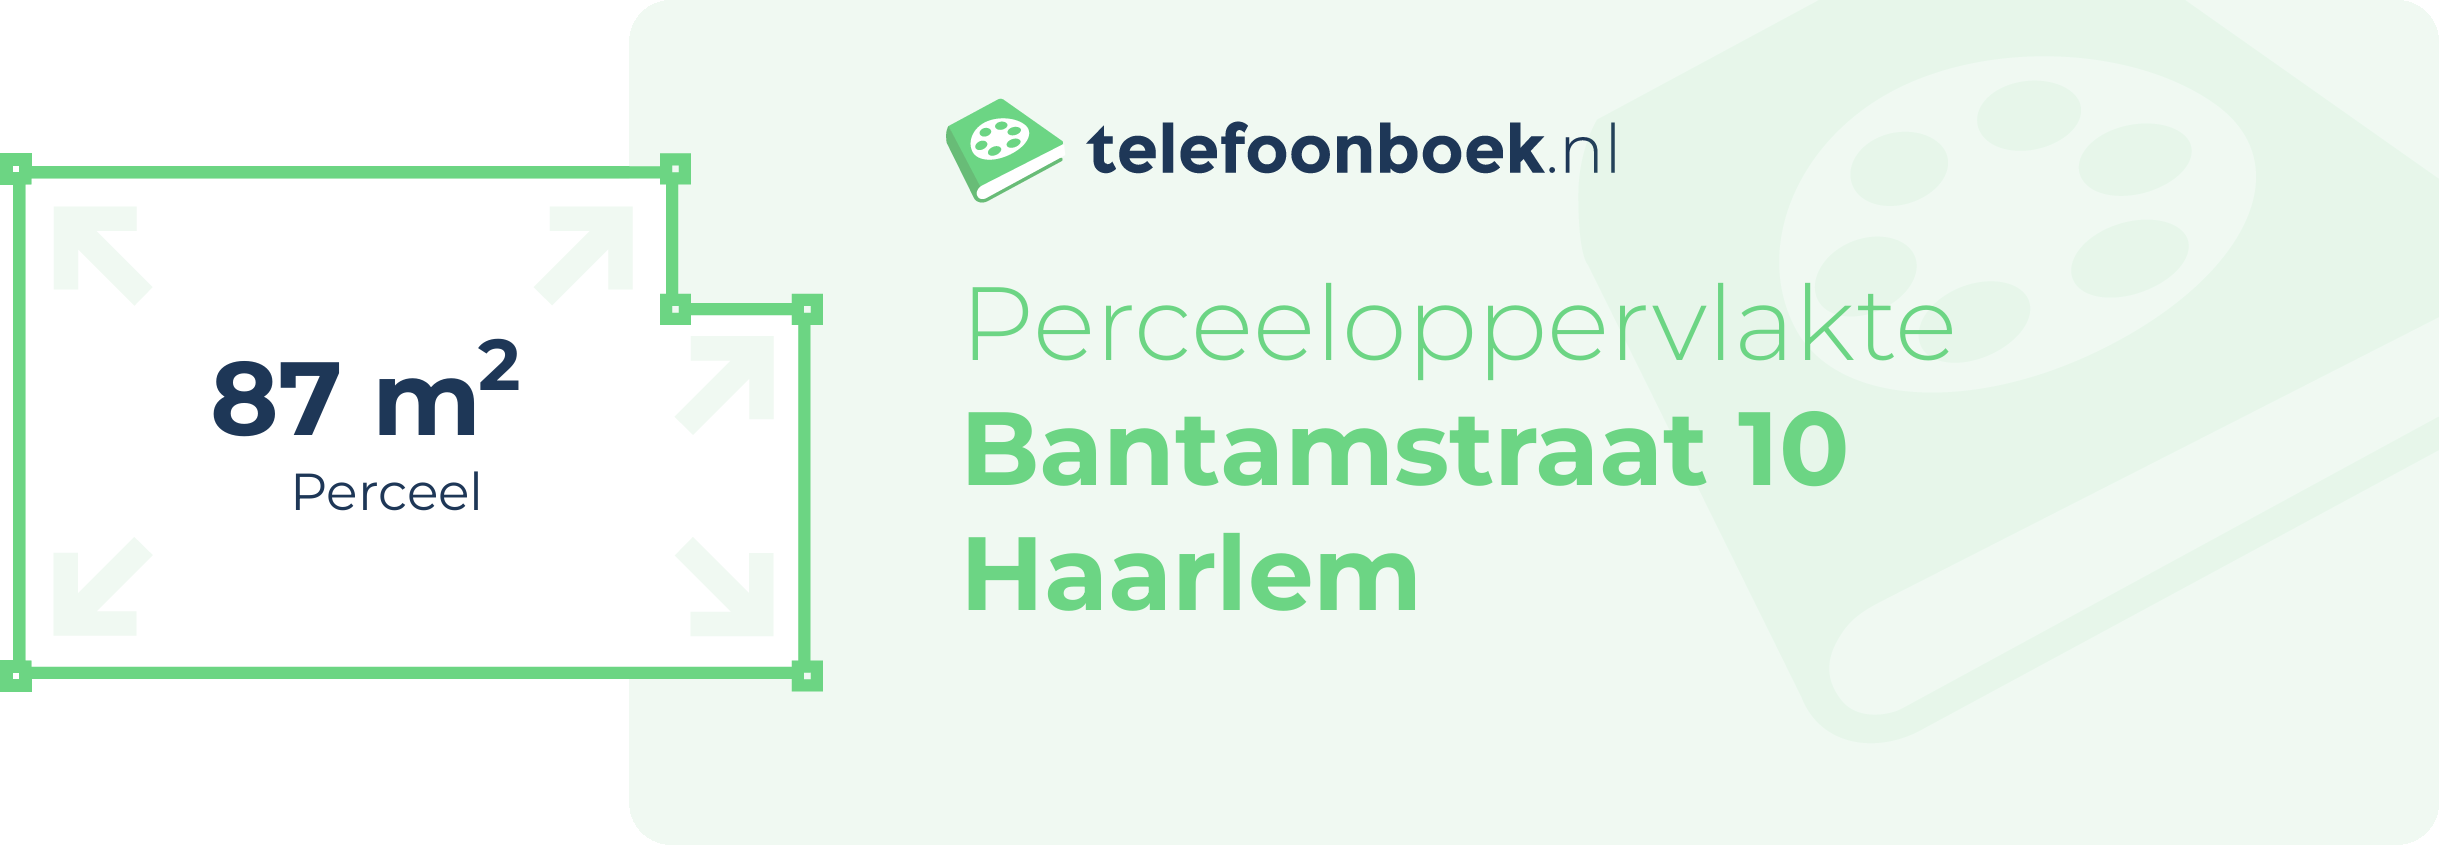 Perceeloppervlakte Bantamstraat 10 Haarlem